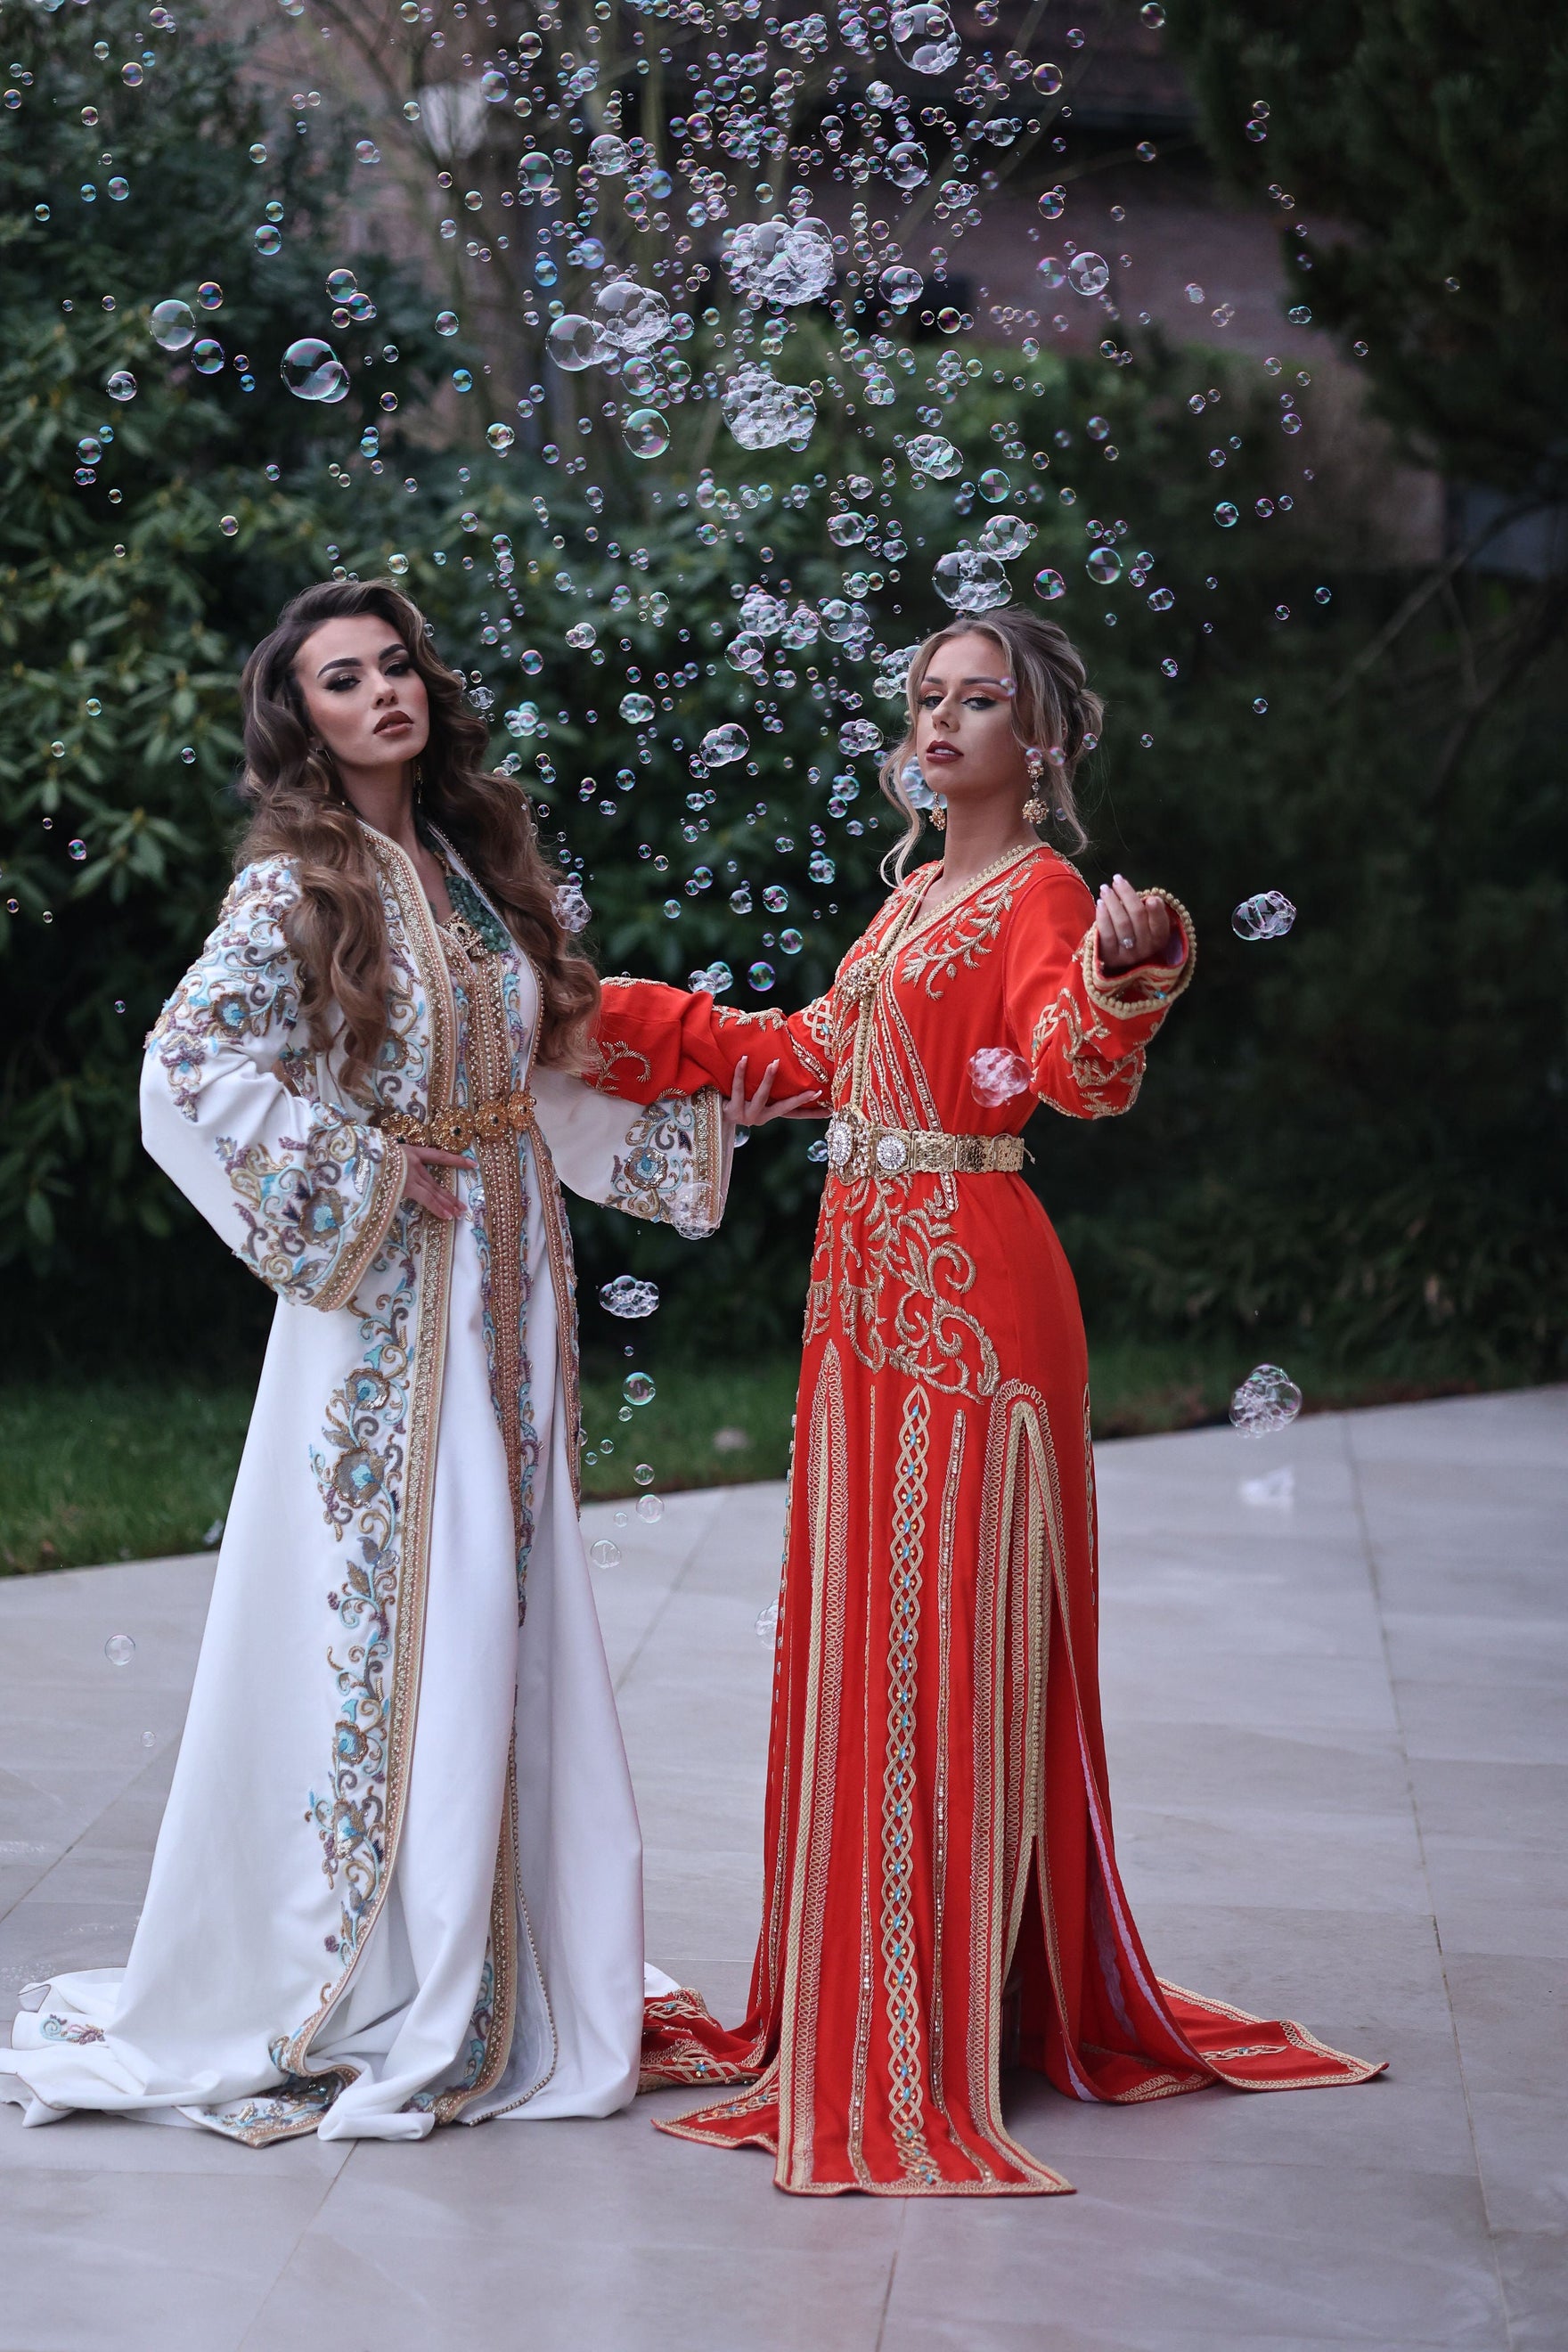 Article sur l'histoire, la signification culturelle et la mode actuelle du caftan marocain, avec des photos illustrant différents styles et designs de caftans